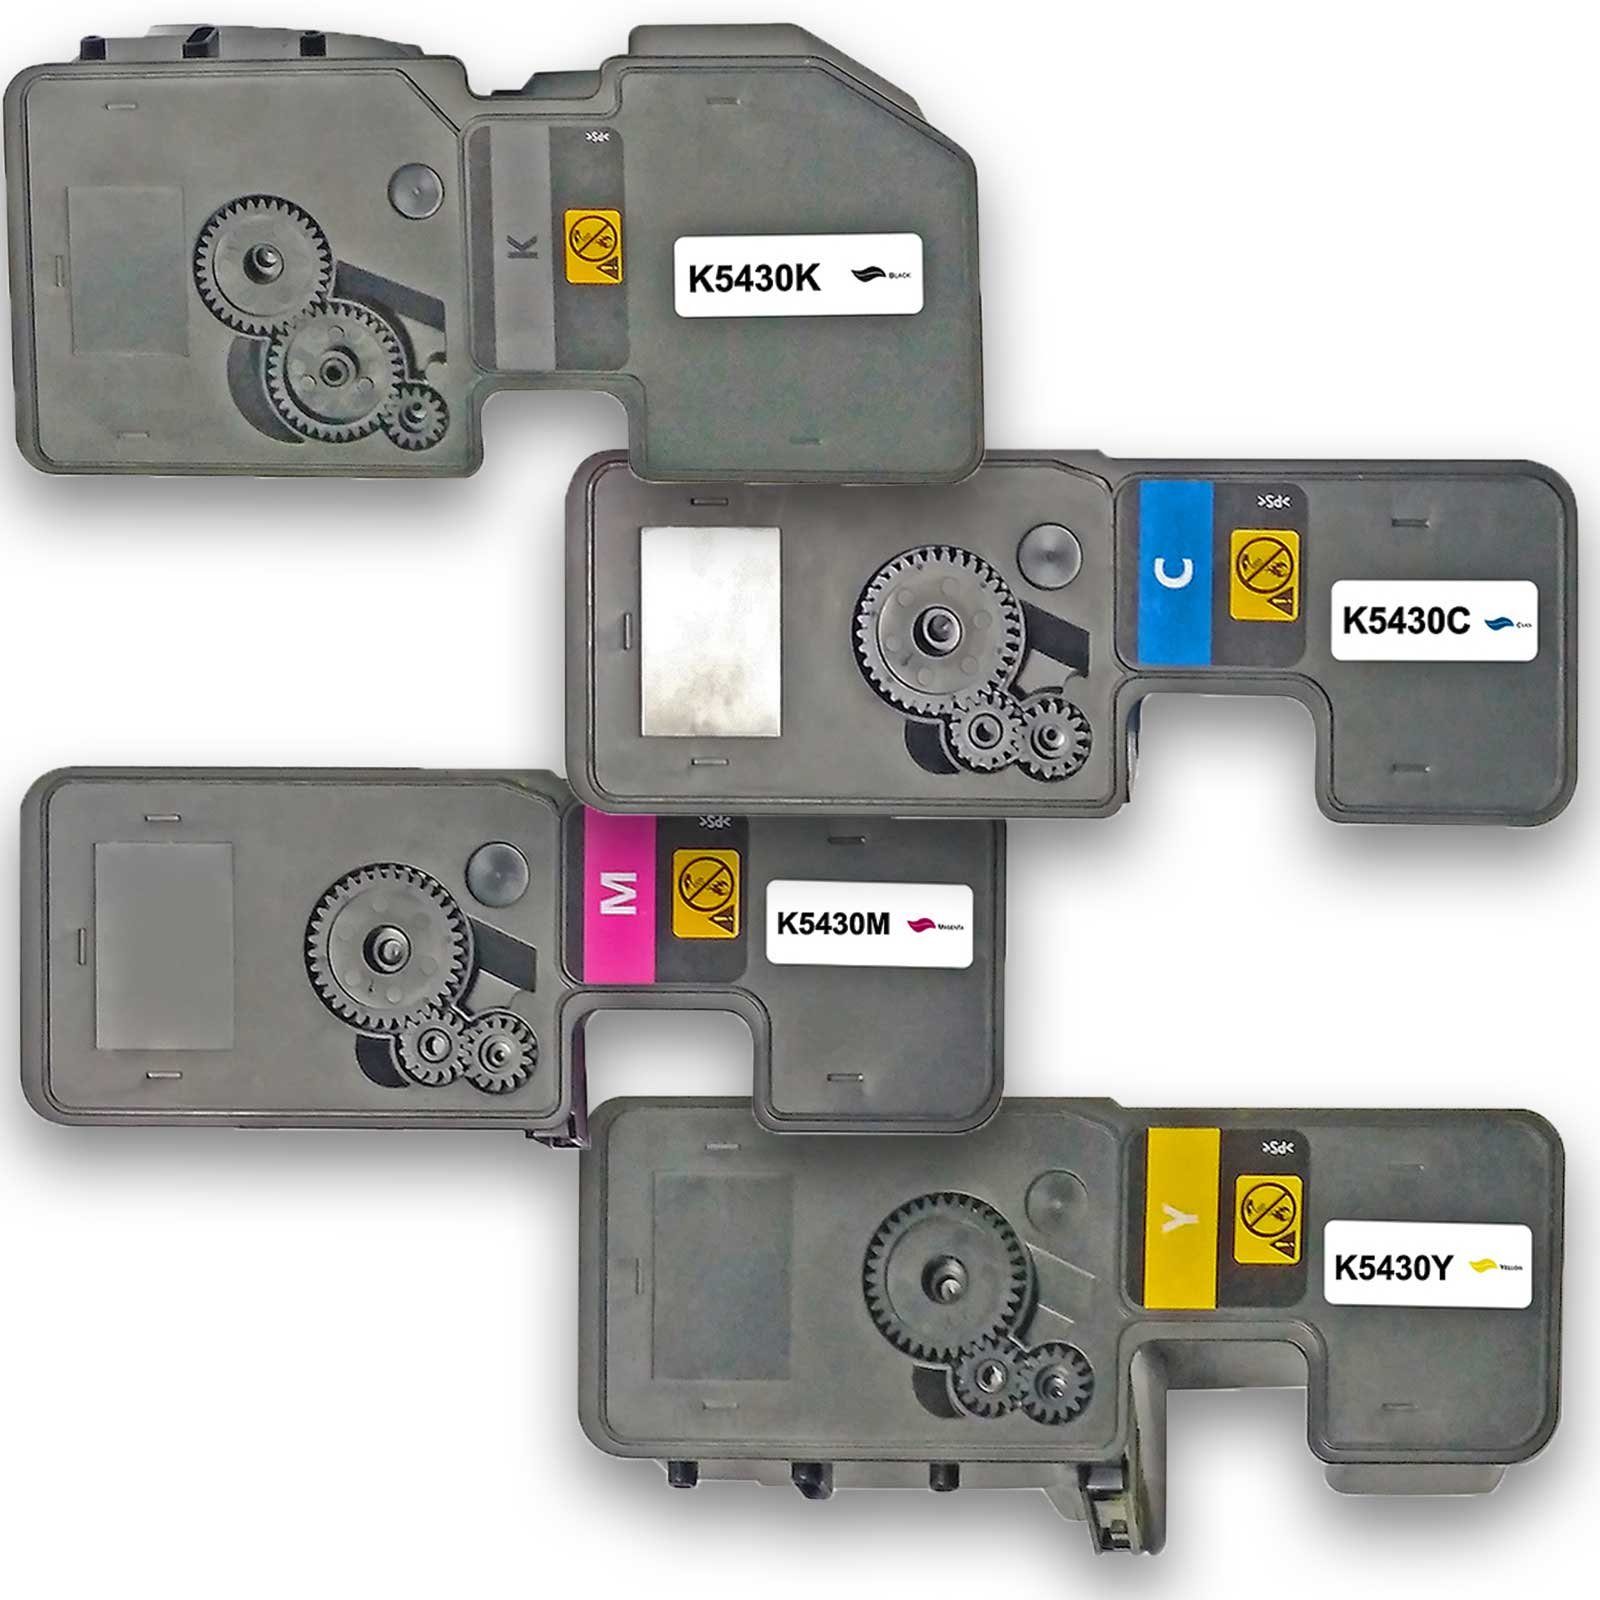 Gigao Tonerkartusche Kompatibel Kyocera TK-5430 Multipack 4-Farben (Schwarz, Cyan, Magenta | Tonerpatronen